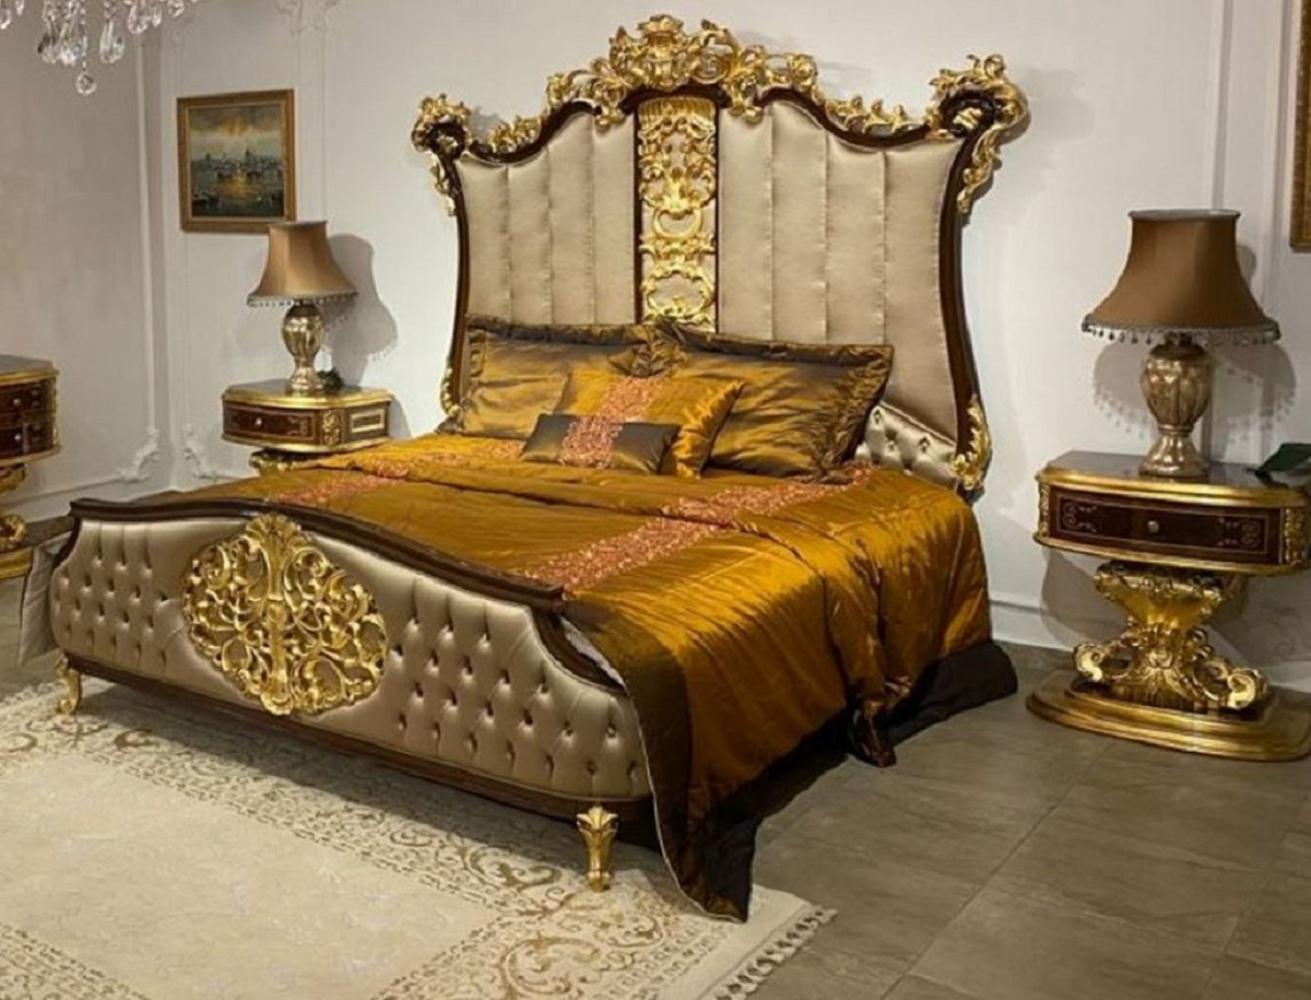 Casa Padrino Luxus Barock Schlafzimmer Set Silber / Dunkelbraun / Gold - 1 Doppelbett mit Kopfteil & 2 Nachtkommoden - Hochwertige Schlafzimmer Möbel im Barockstil - Edel & Prunkvoll Bild 1